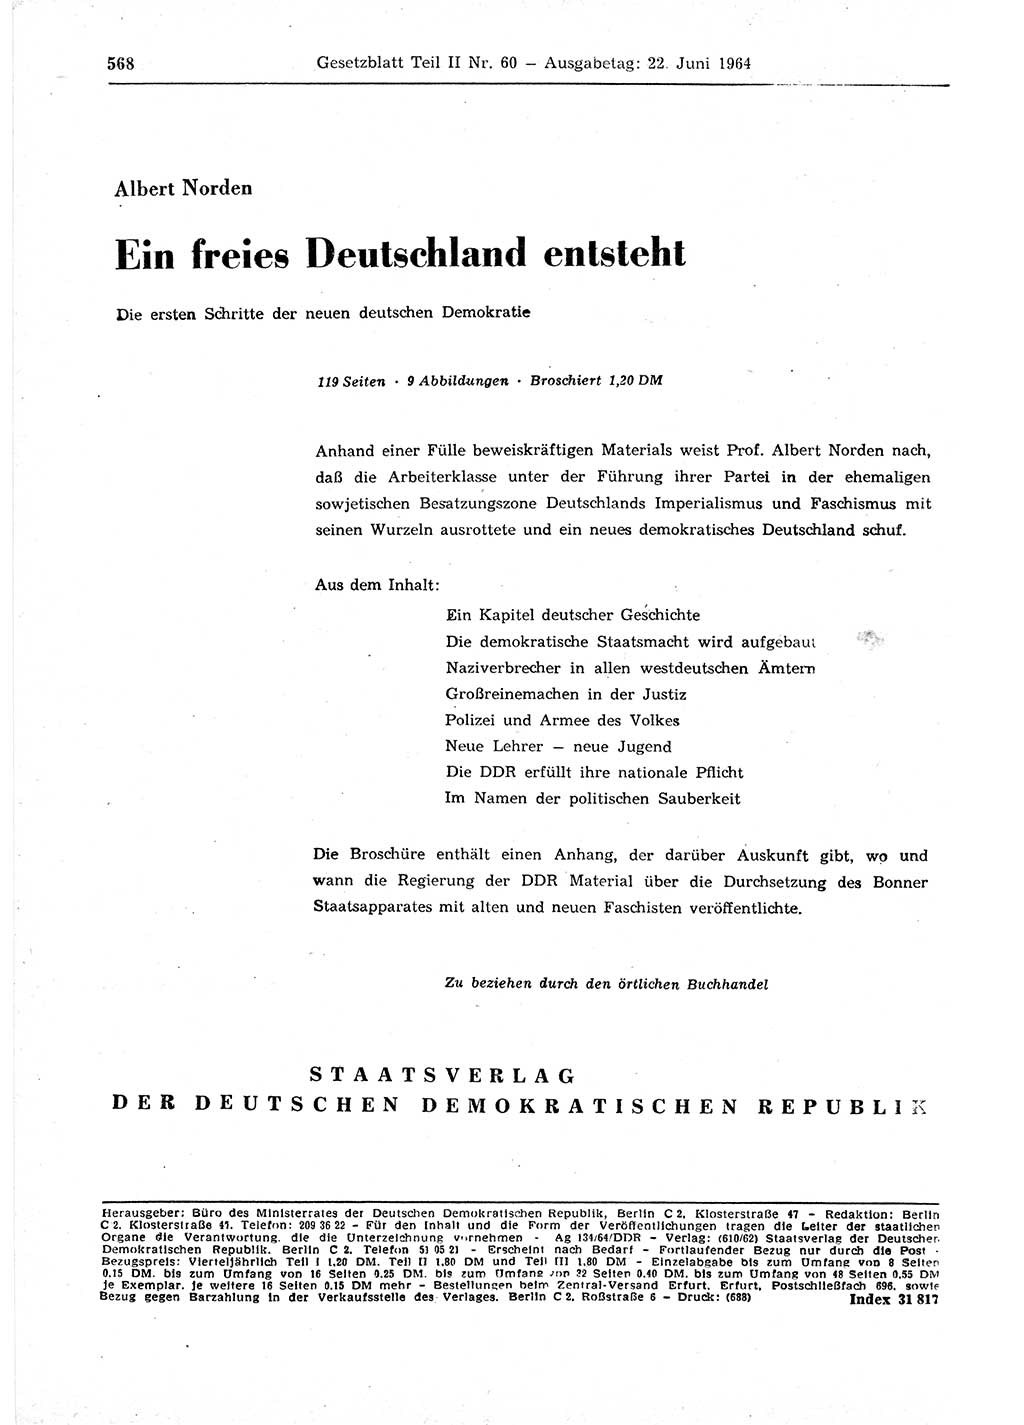 Gesetzblatt (GBl.) der Deutschen Demokratischen Republik (DDR) Teil ⅠⅠ 1964, Seite 568 (GBl. DDR ⅠⅠ 1964, S. 568)